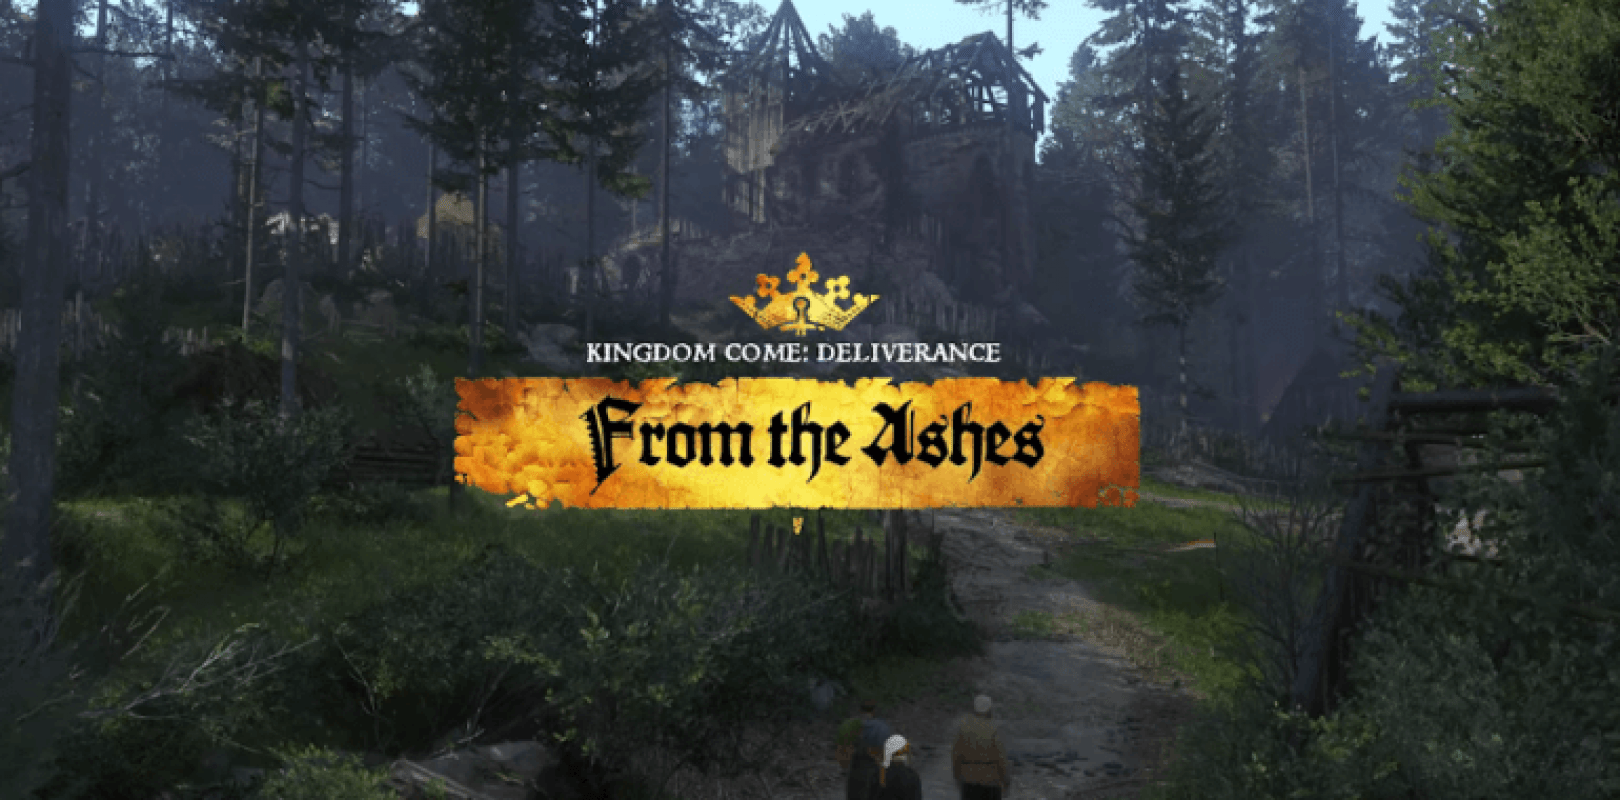 From the Ashes, el próximo DLC de Kingdom Come Deliverance, exhibe su contenido en un tráiler inédito